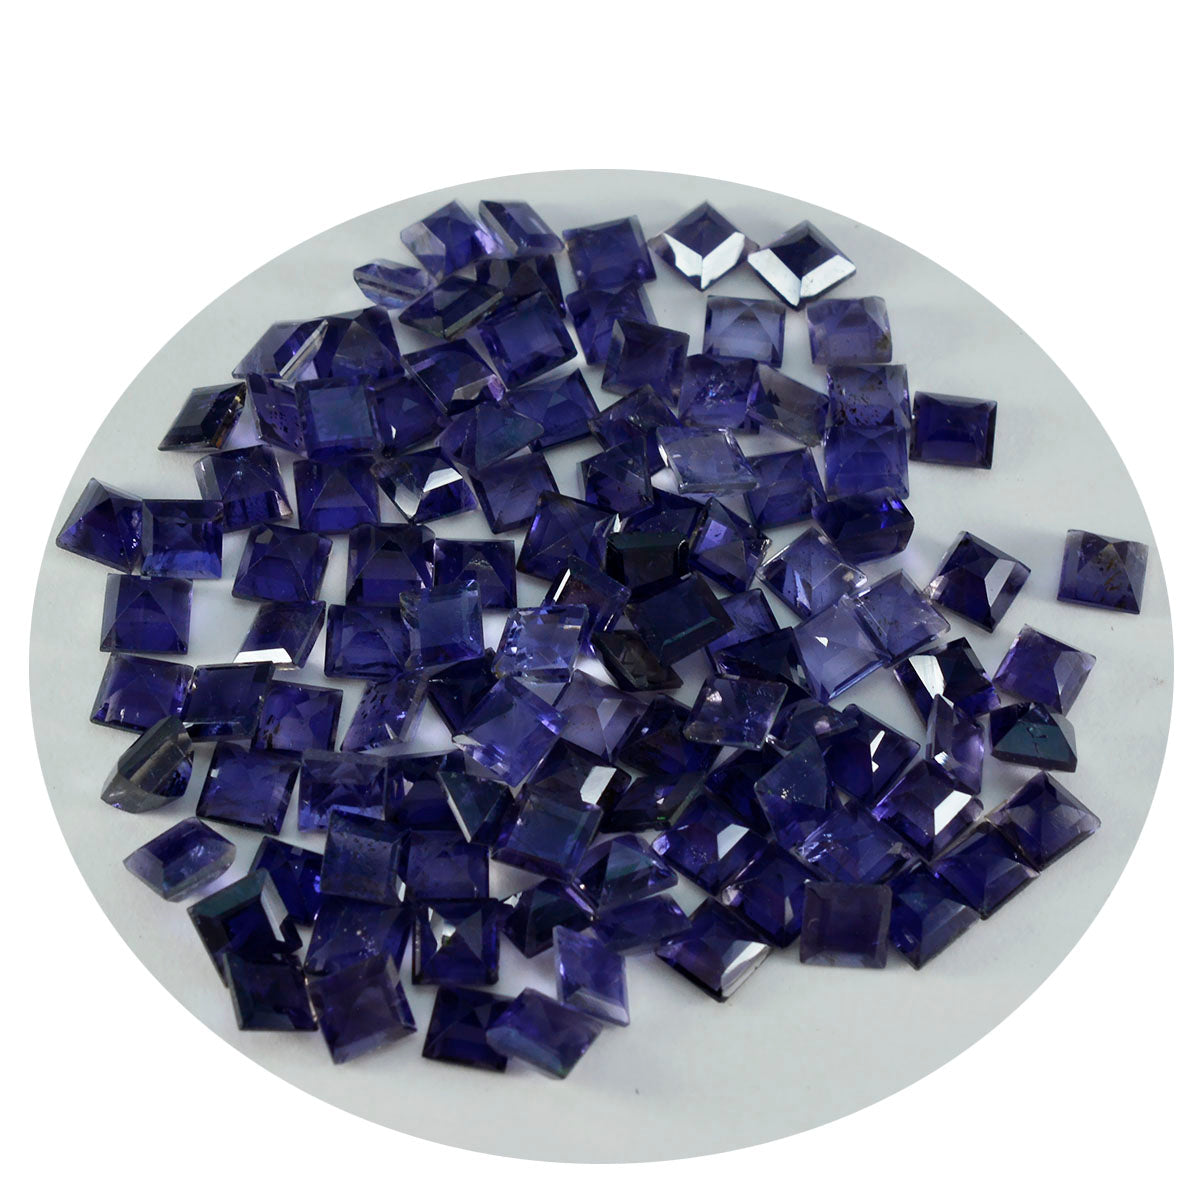 riyogems 1шт синий иолит ограненный 6x6 мм квадратной формы камень качества ААА